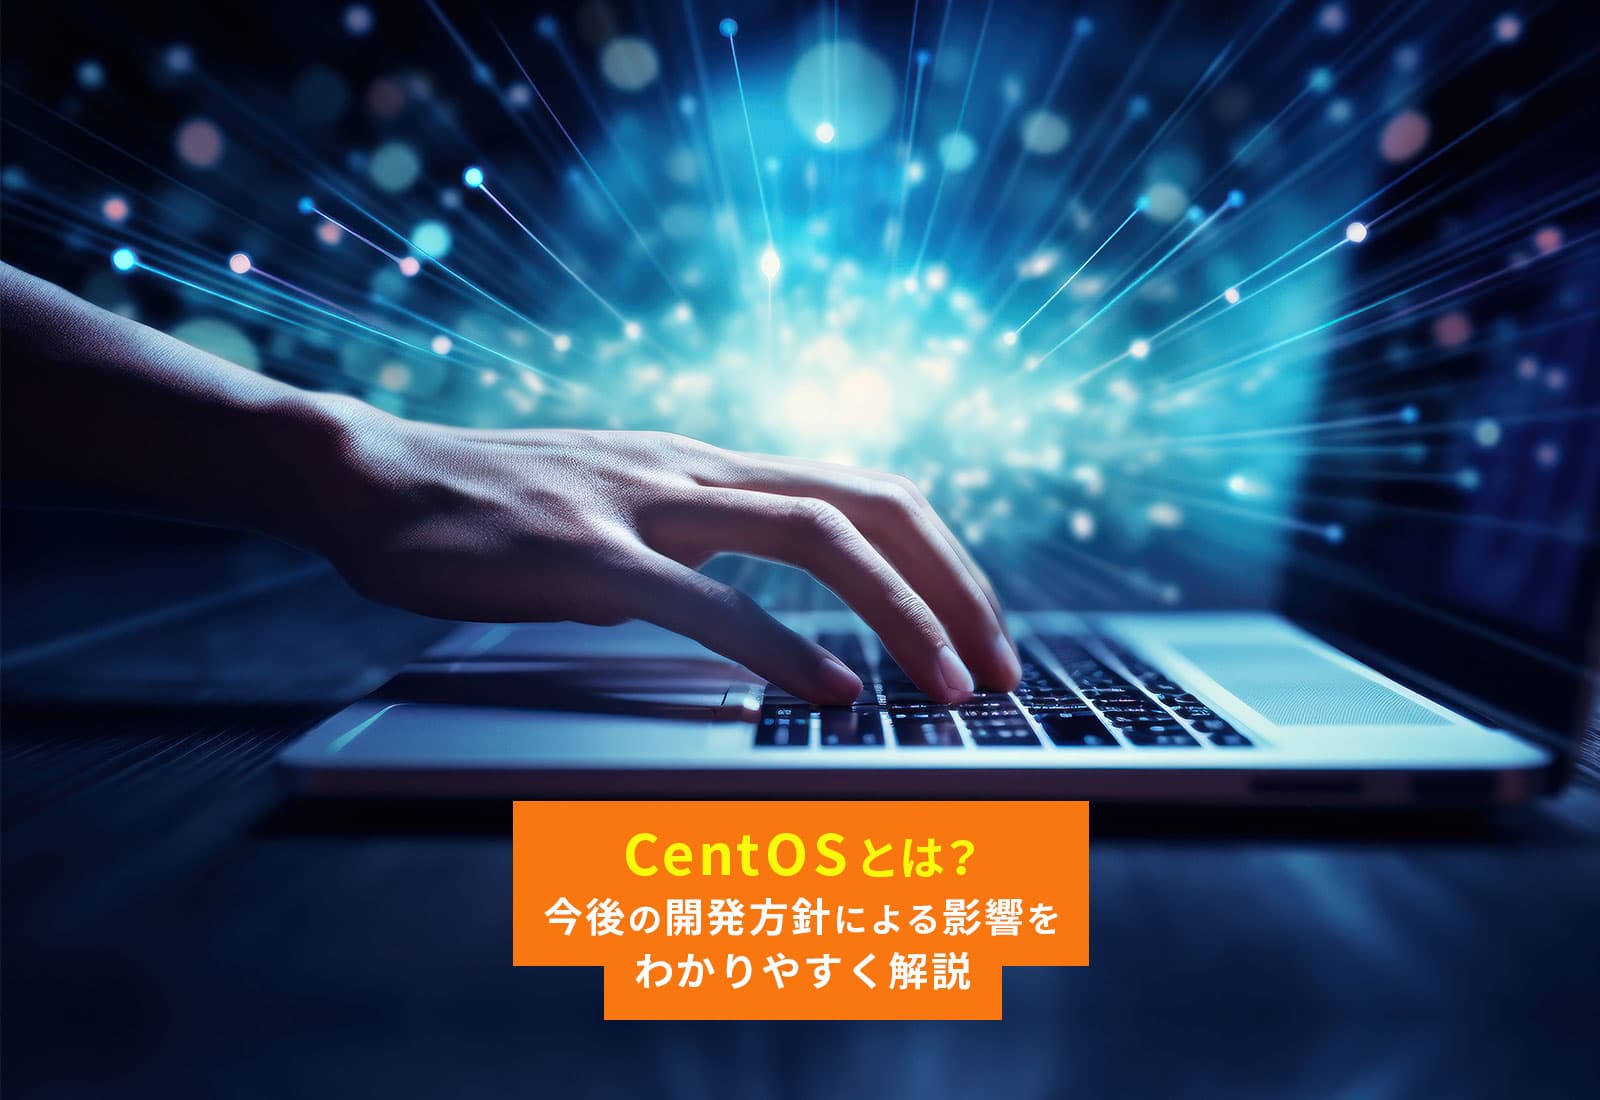 CentOSとは？今後の開発方針による影響をわかりやすく解説